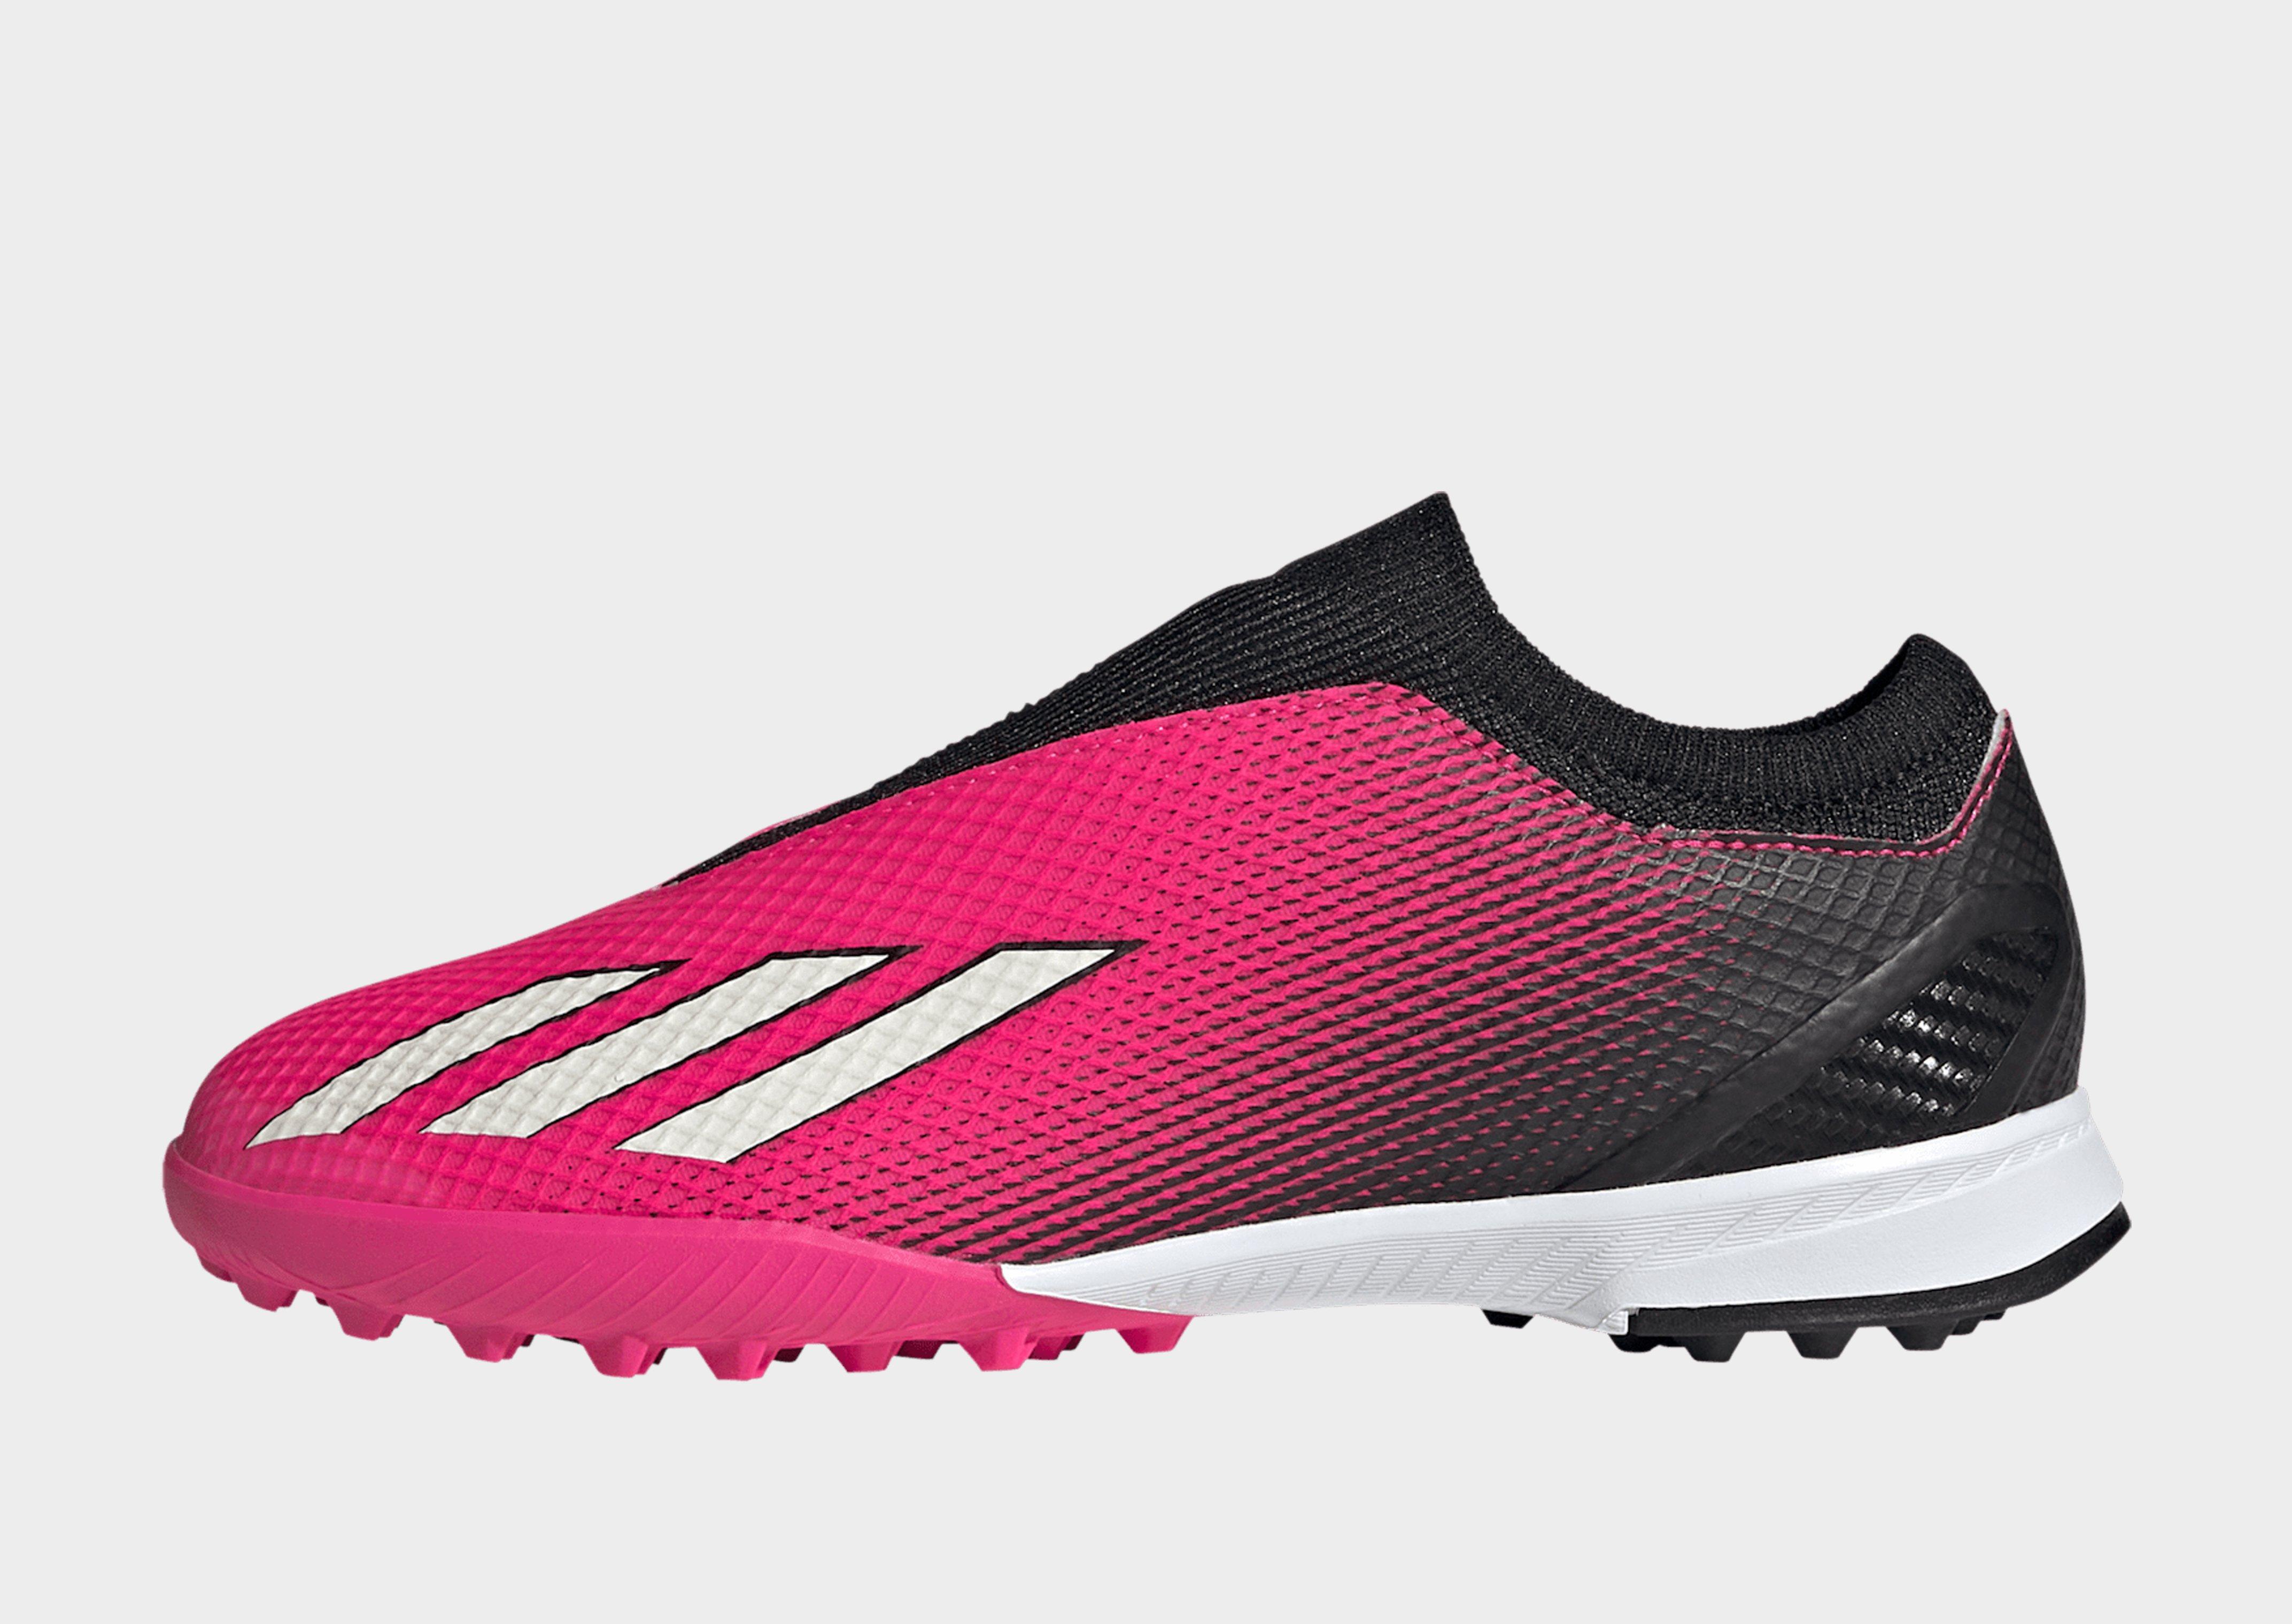 adidas Tf 3S 7/8 Leggings Pink